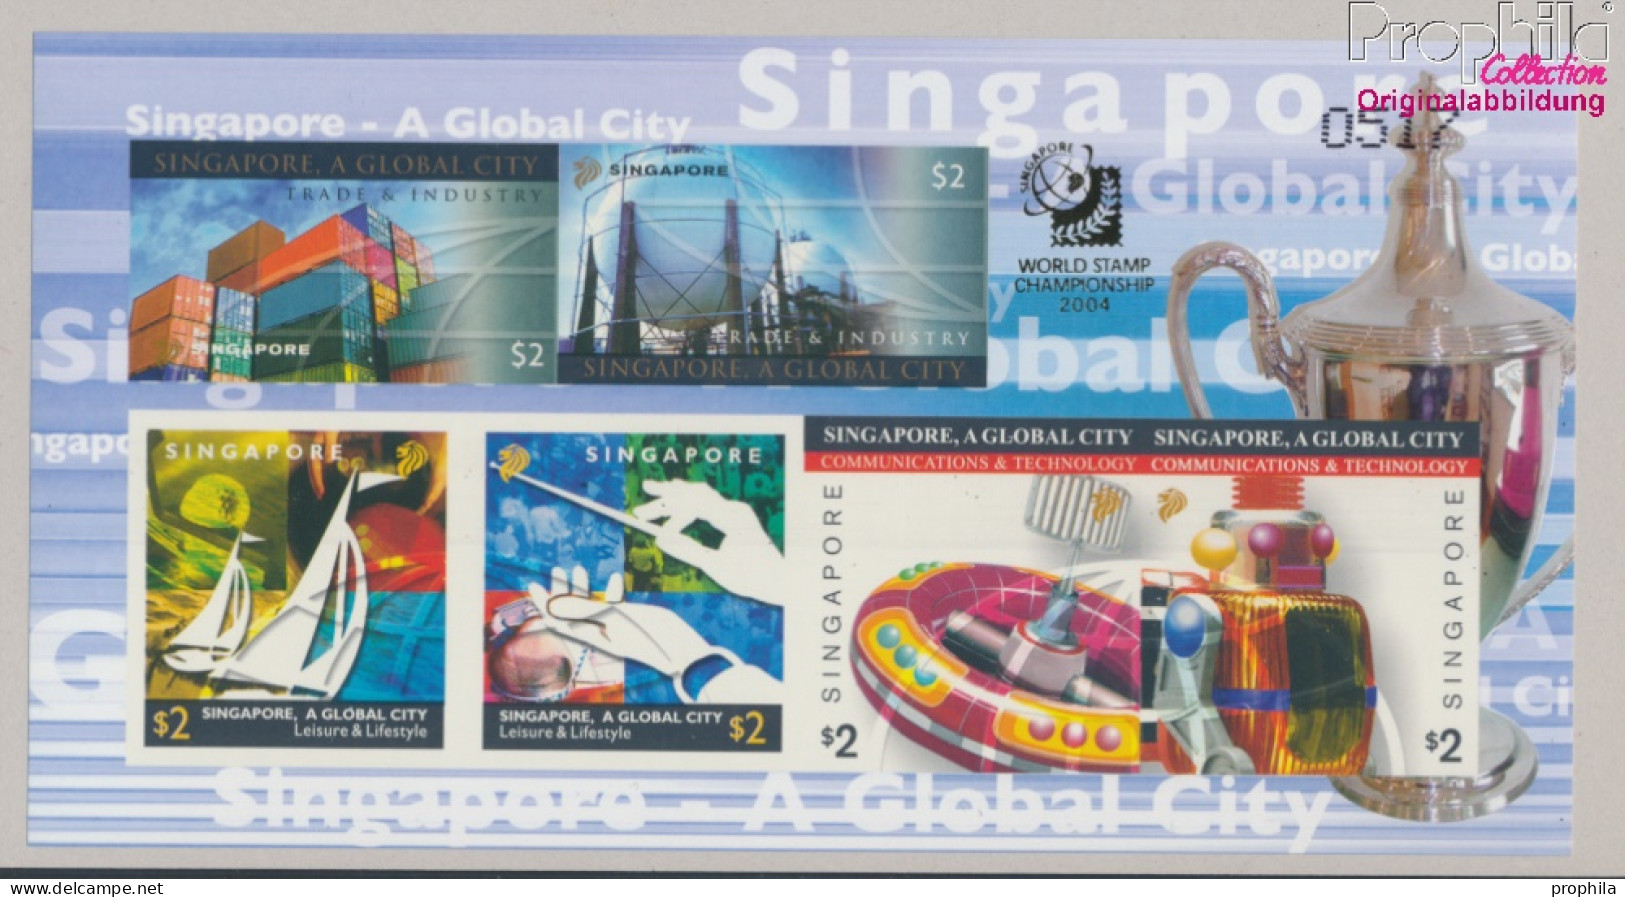 Singapur Block113B (kompl.Ausg.) Ungezähnt Postfrisch 2004 Weltstadt Singapur (10368184 - Singapur (1959-...)